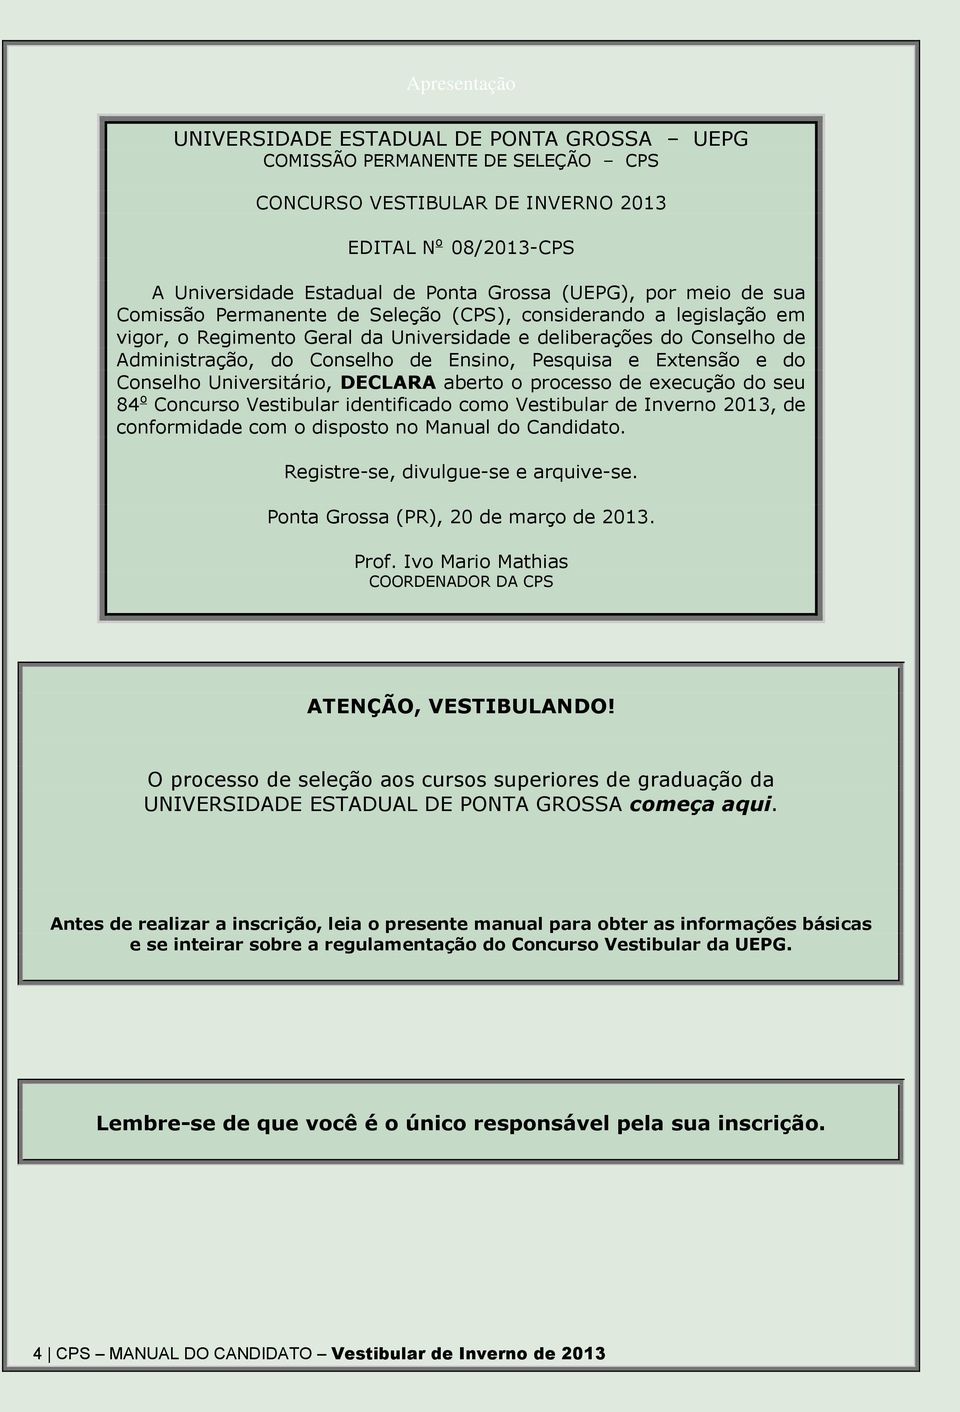 Pesquisa e Extensão e do Conselho Universitário, DECLARA aberto o processo de execução do seu 84 o Concurso Vestibular identificado como Vestibular de Inverno 2013, de conformidade com o disposto no